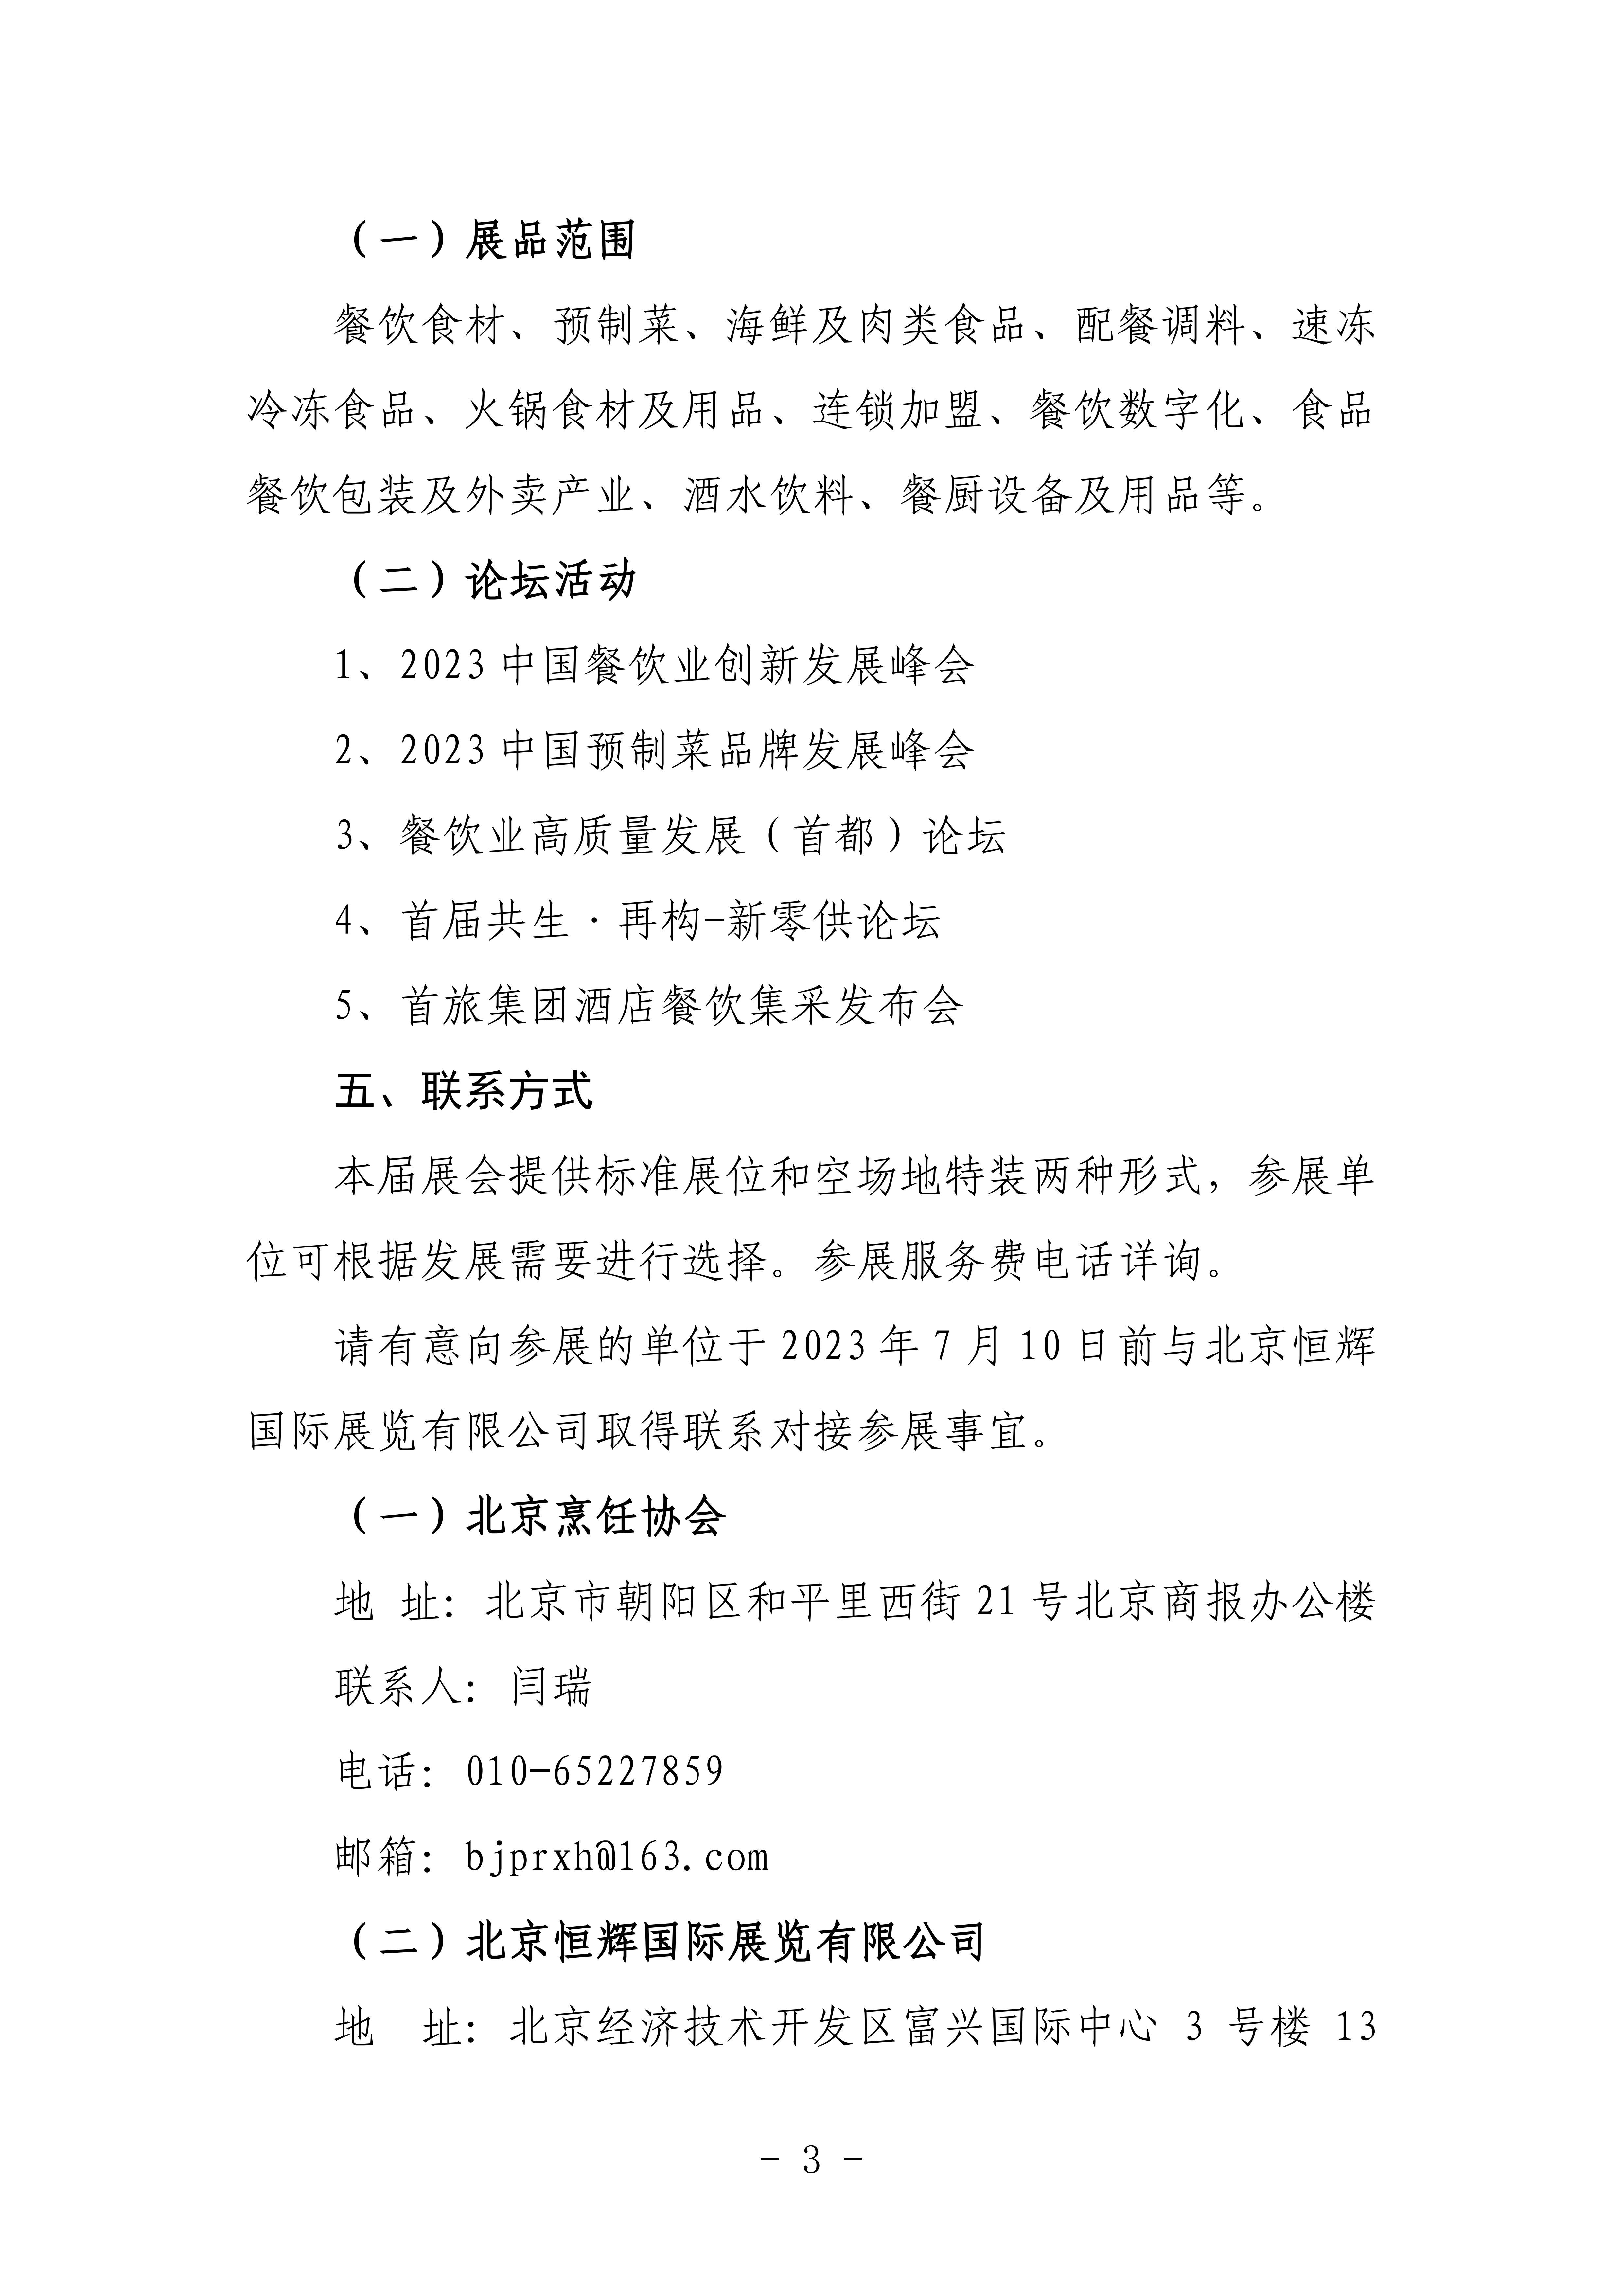 北京烹饪协会关于邀请参加第十三届北京国际餐饮业供应链展览会的函(图3)